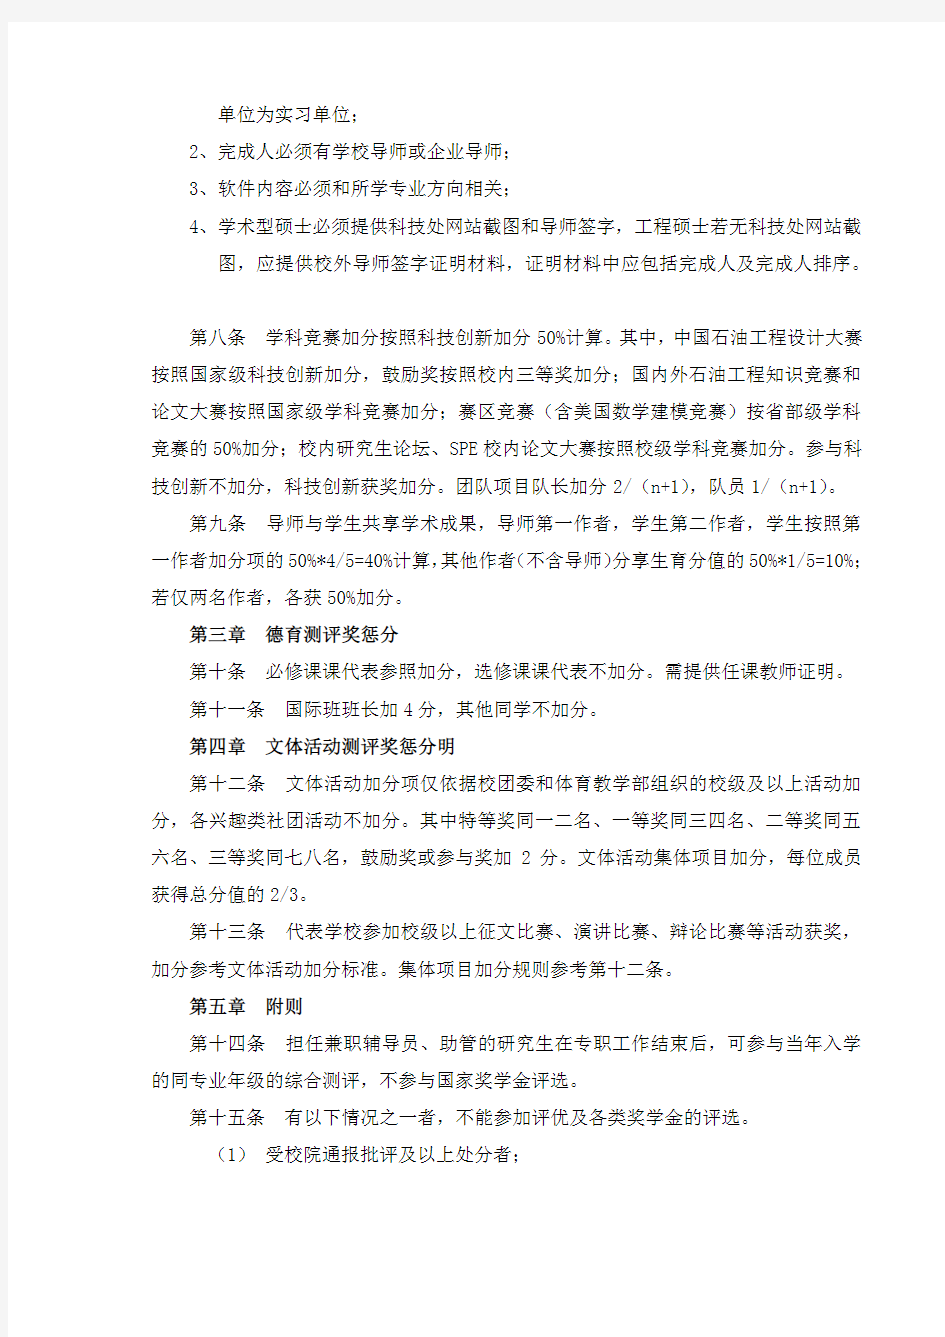 中国石油大学(北京)研究生综合测评加分细则(最终版)